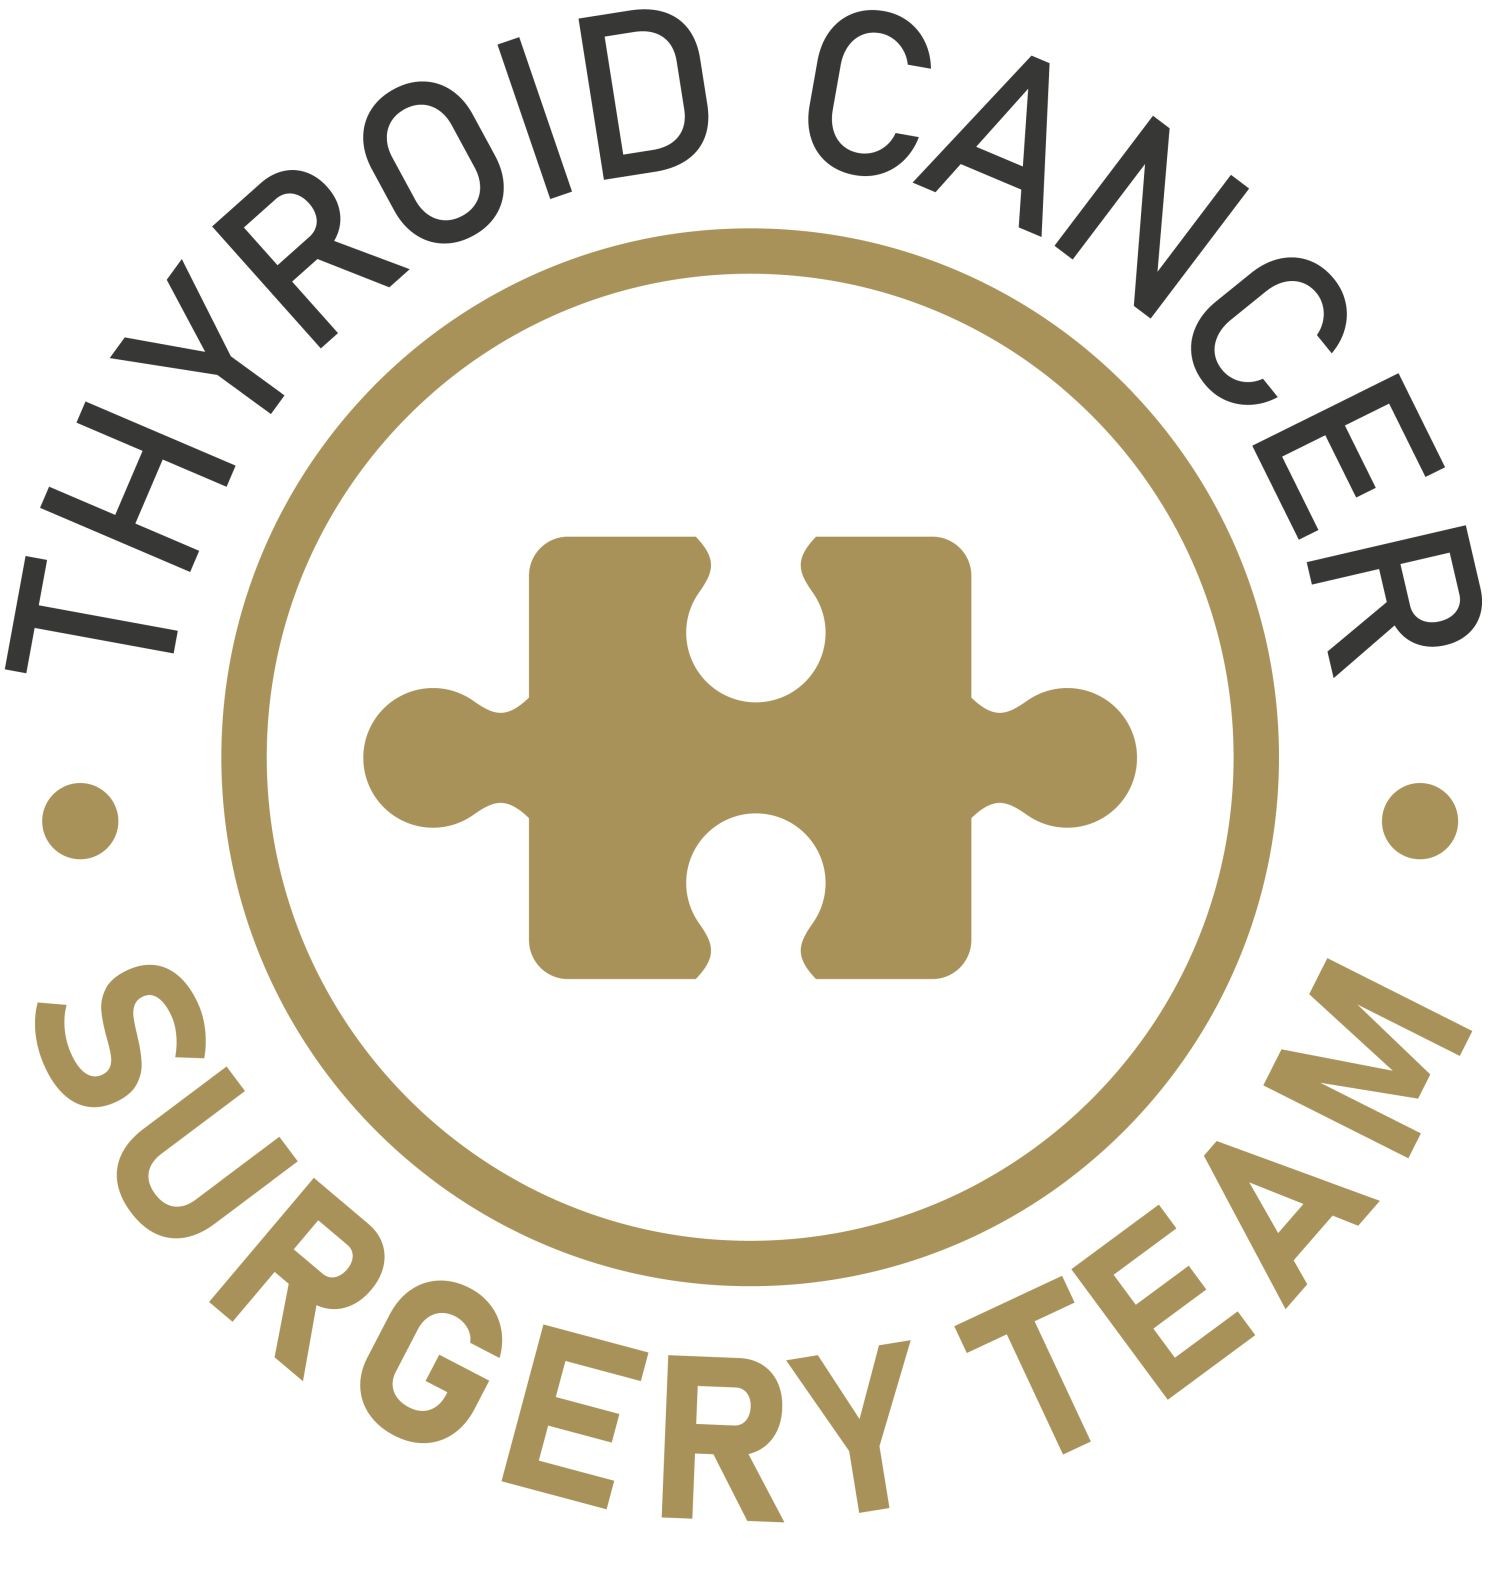 thyroid-cancer-surgery-team-rafailidis.jpg